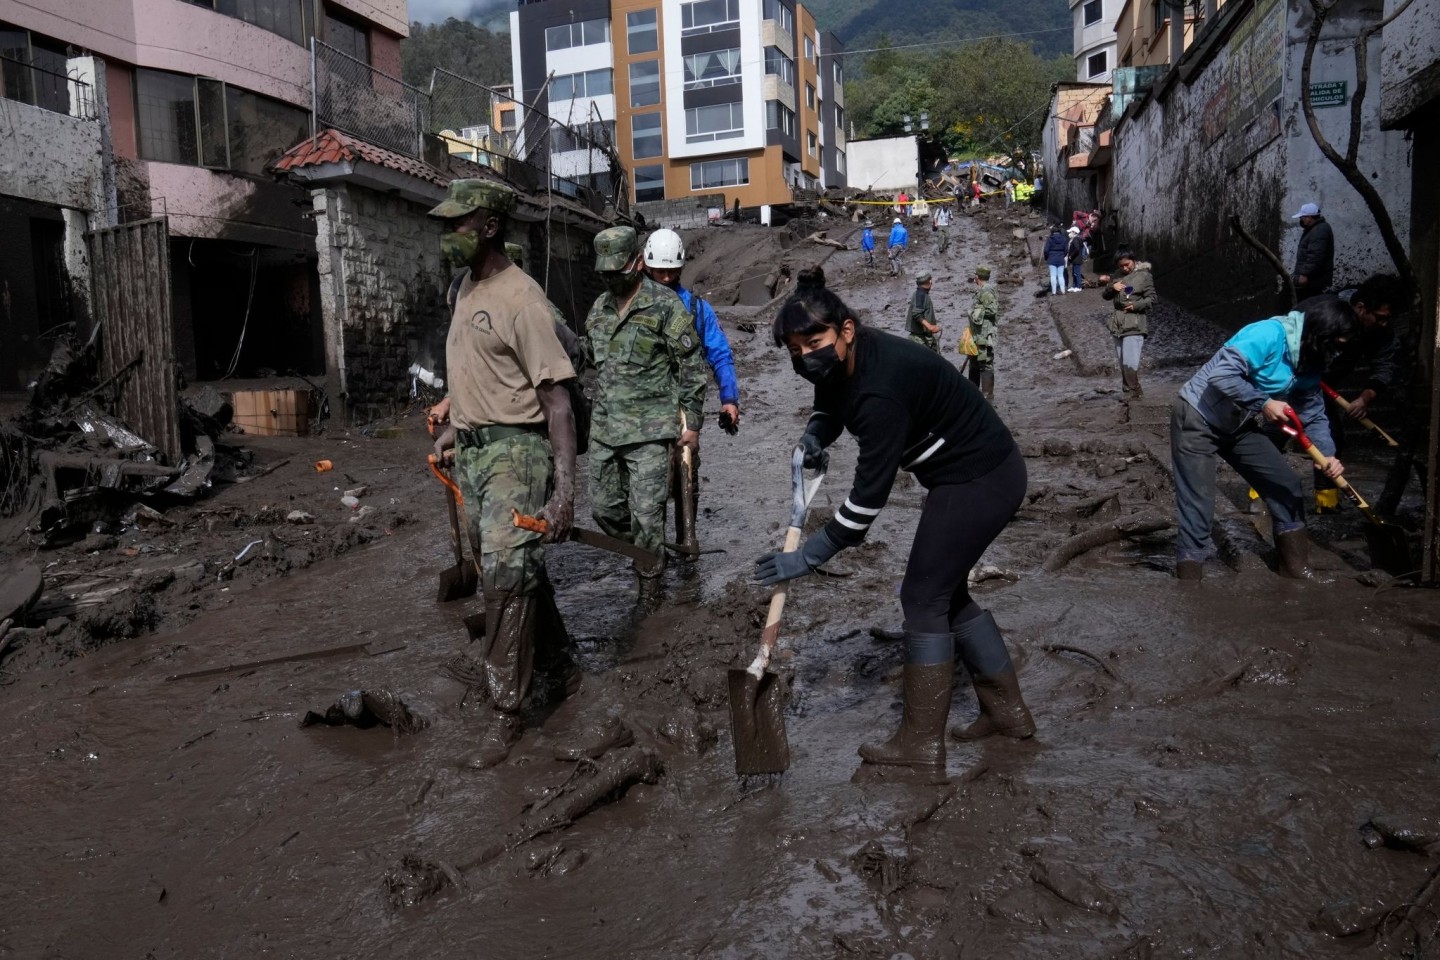 Anwohner und Soldaten arbeiten daran, die Straßen in der Hauptstadt Quito von Schlamm zu befreien.